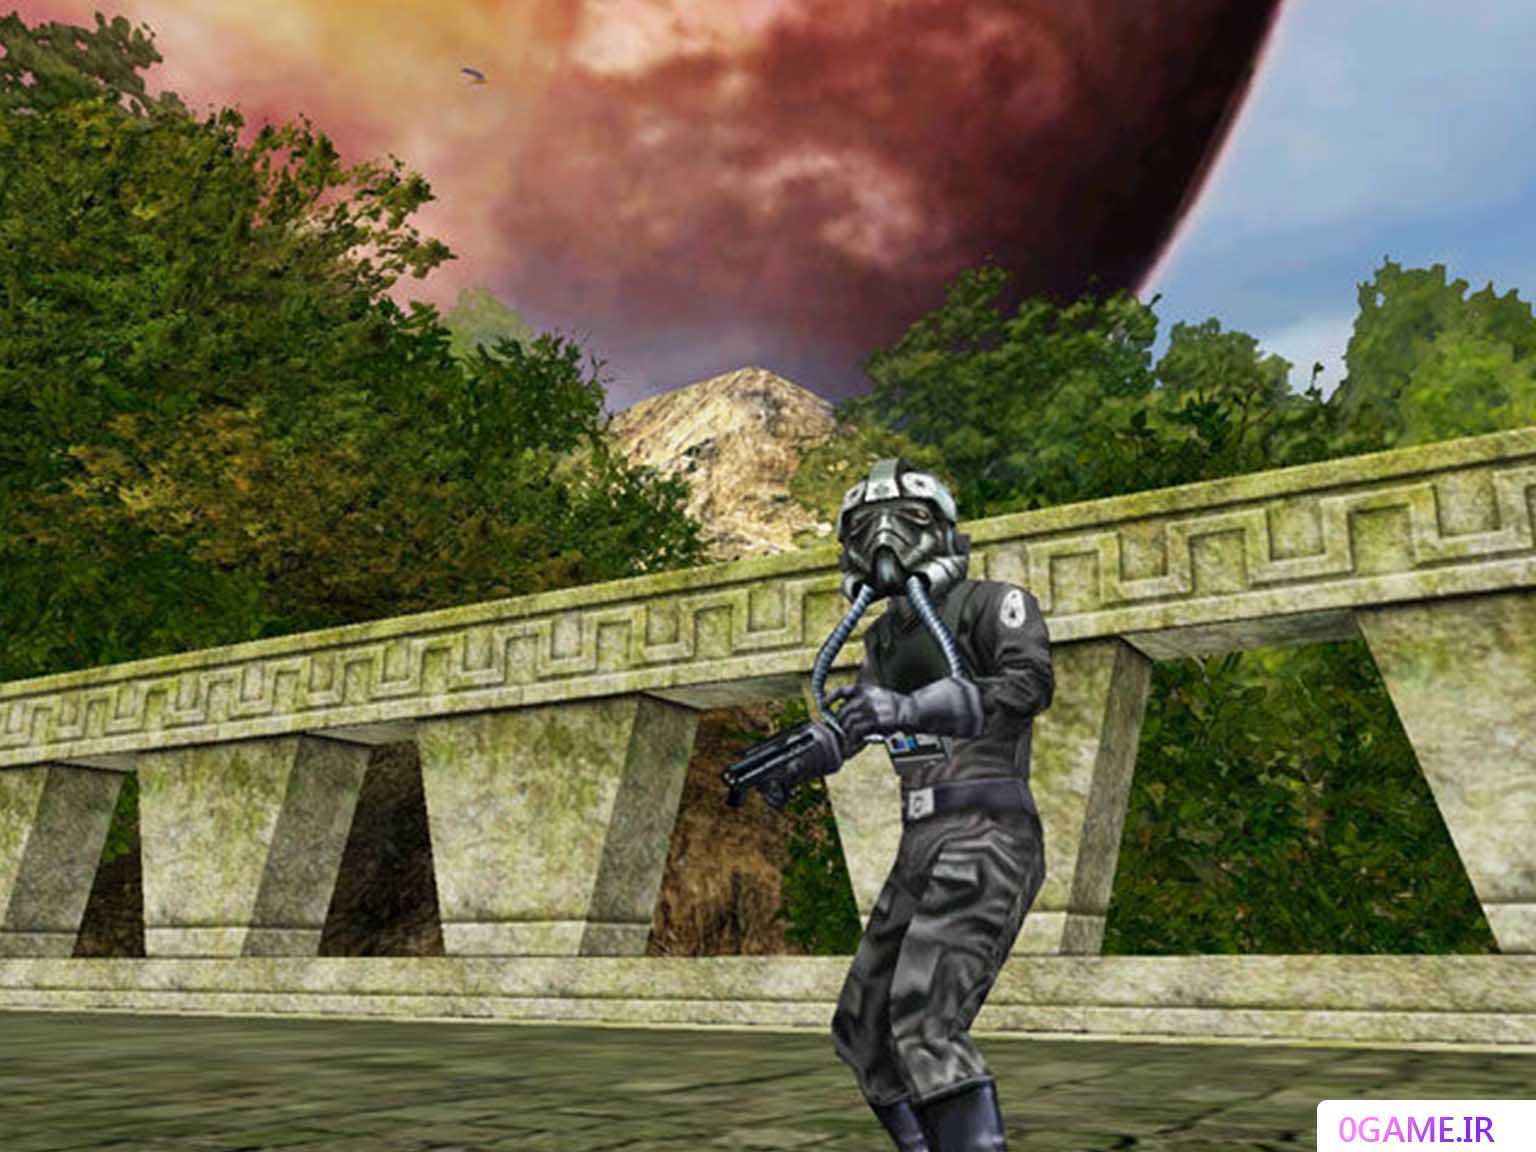 دانلود بازی جنگ ستارگان  جبهه نبرد 1 (Star Wars: Battlefront) نسخه کامل برای کامپیوتر